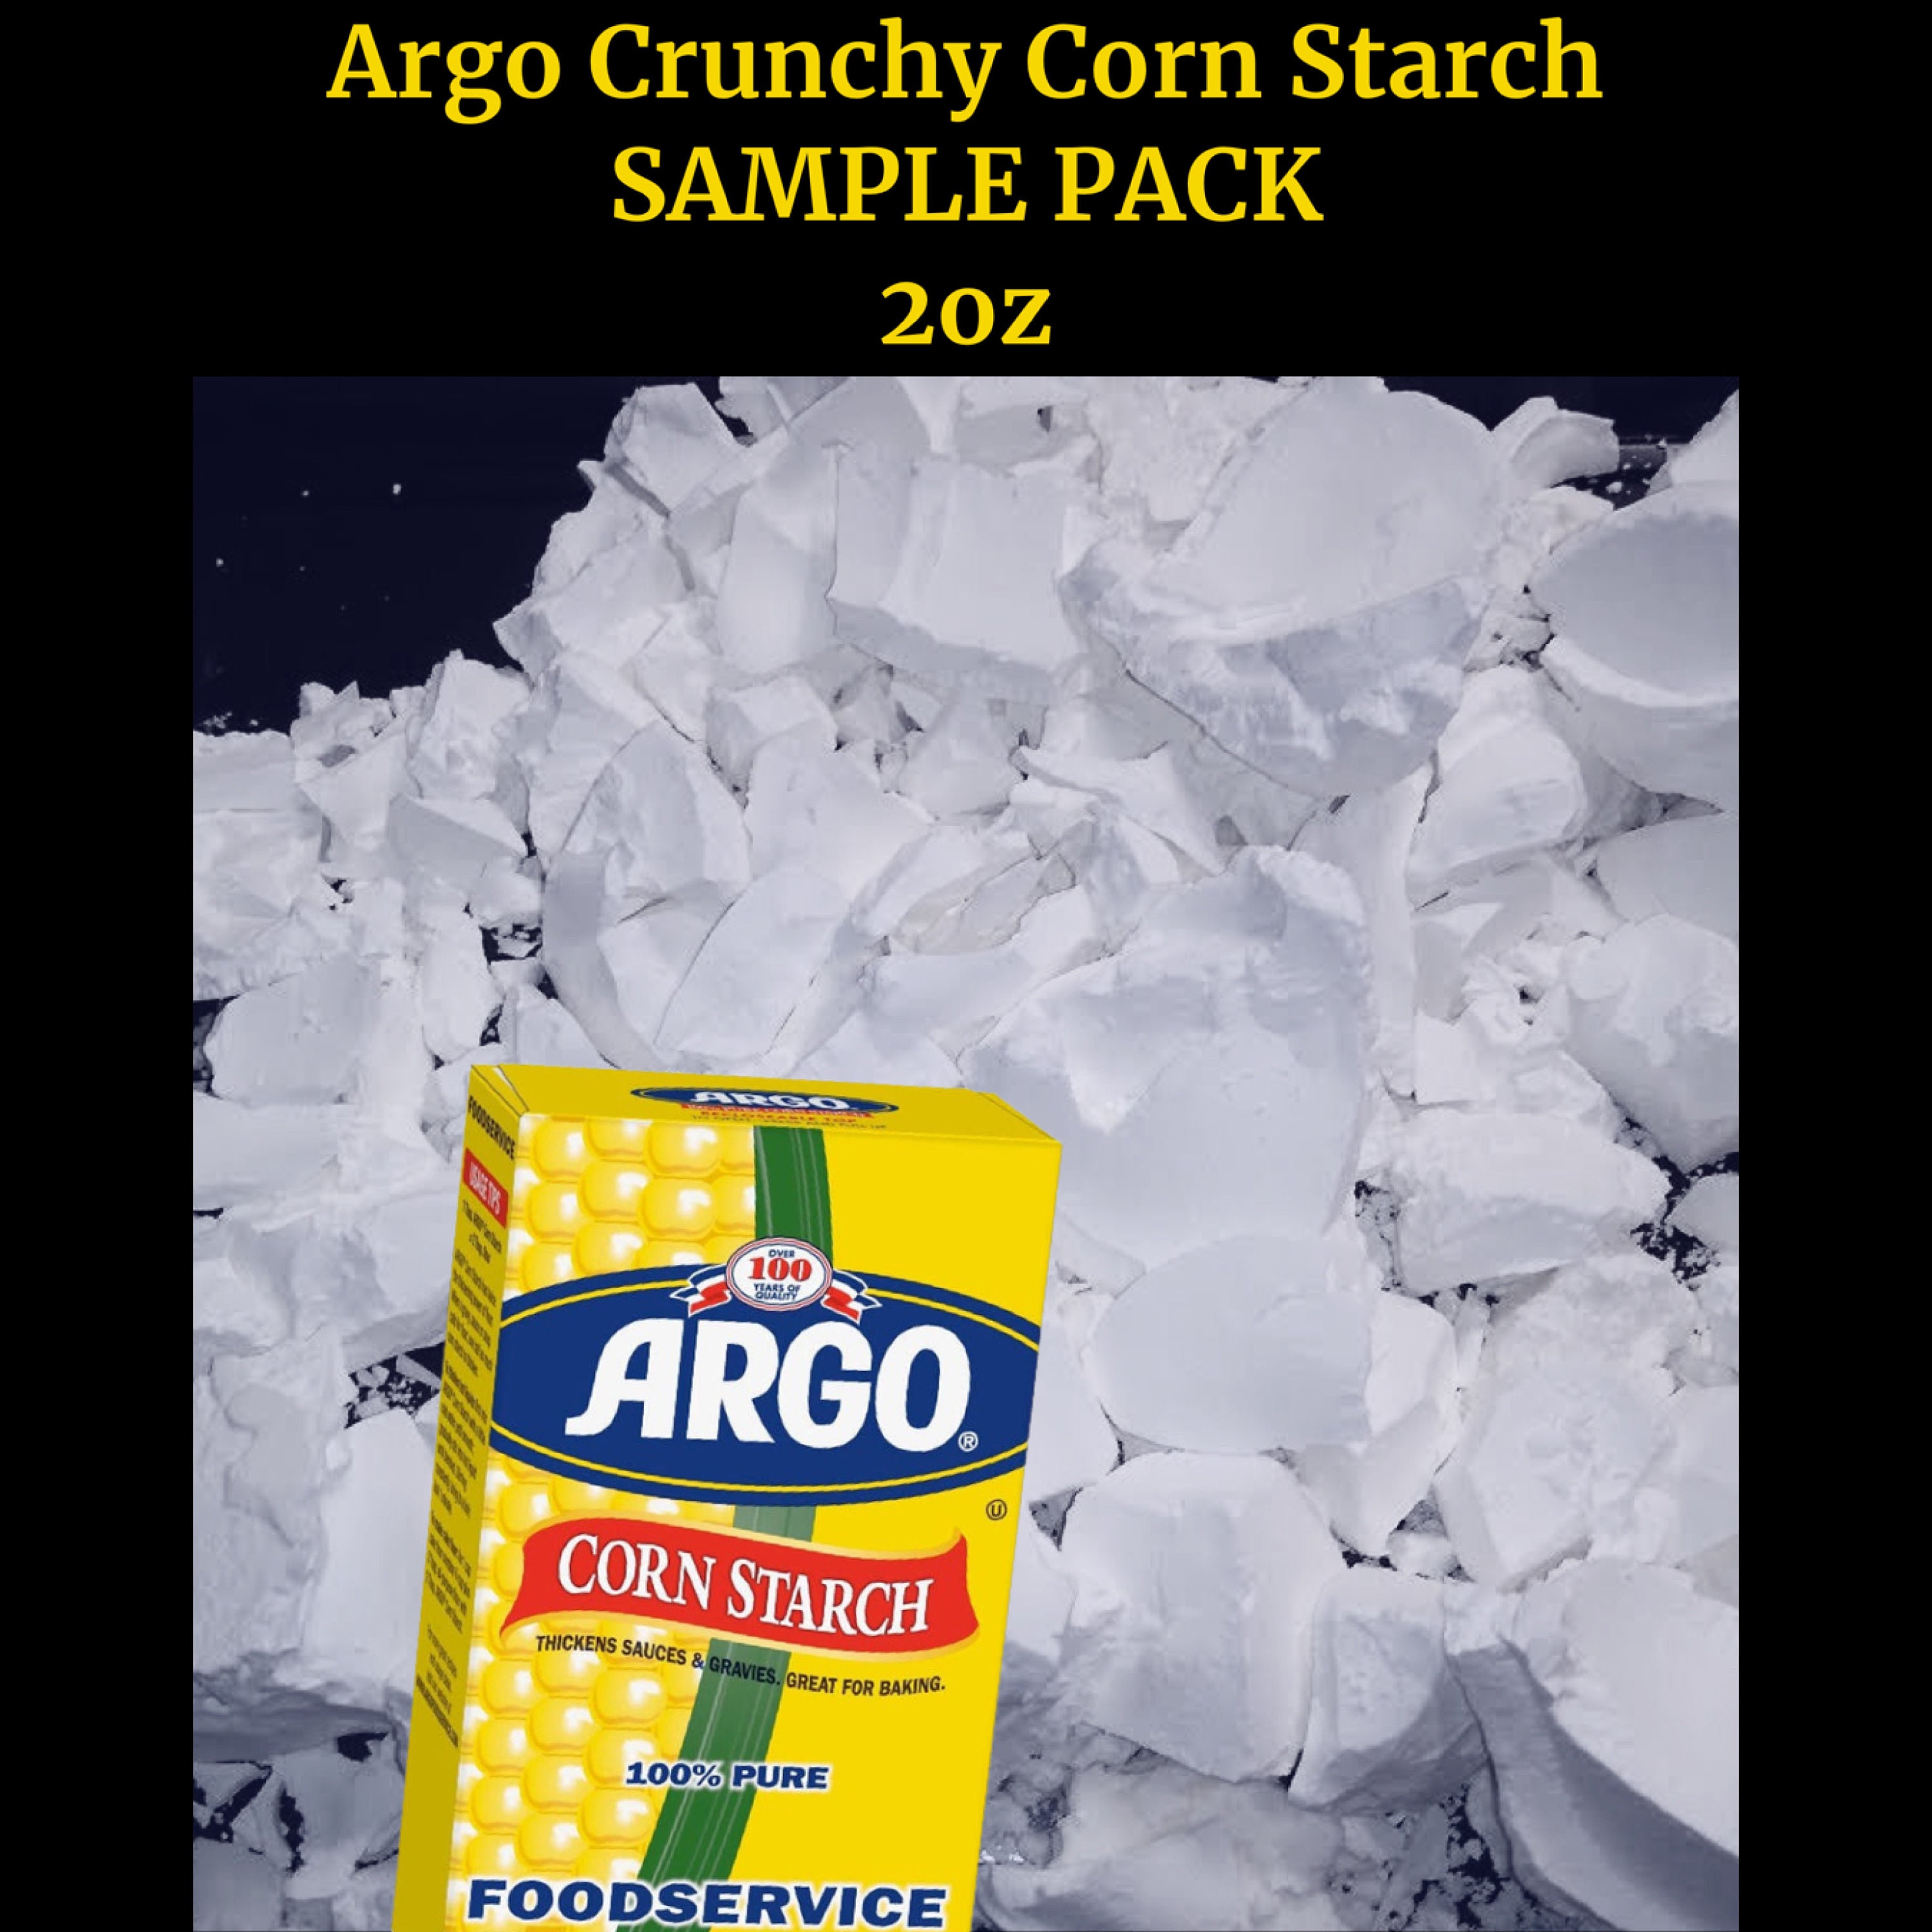 Corn starch chunks😍 #cornstarcheating #cornstarchasmr #cornstarchaddi